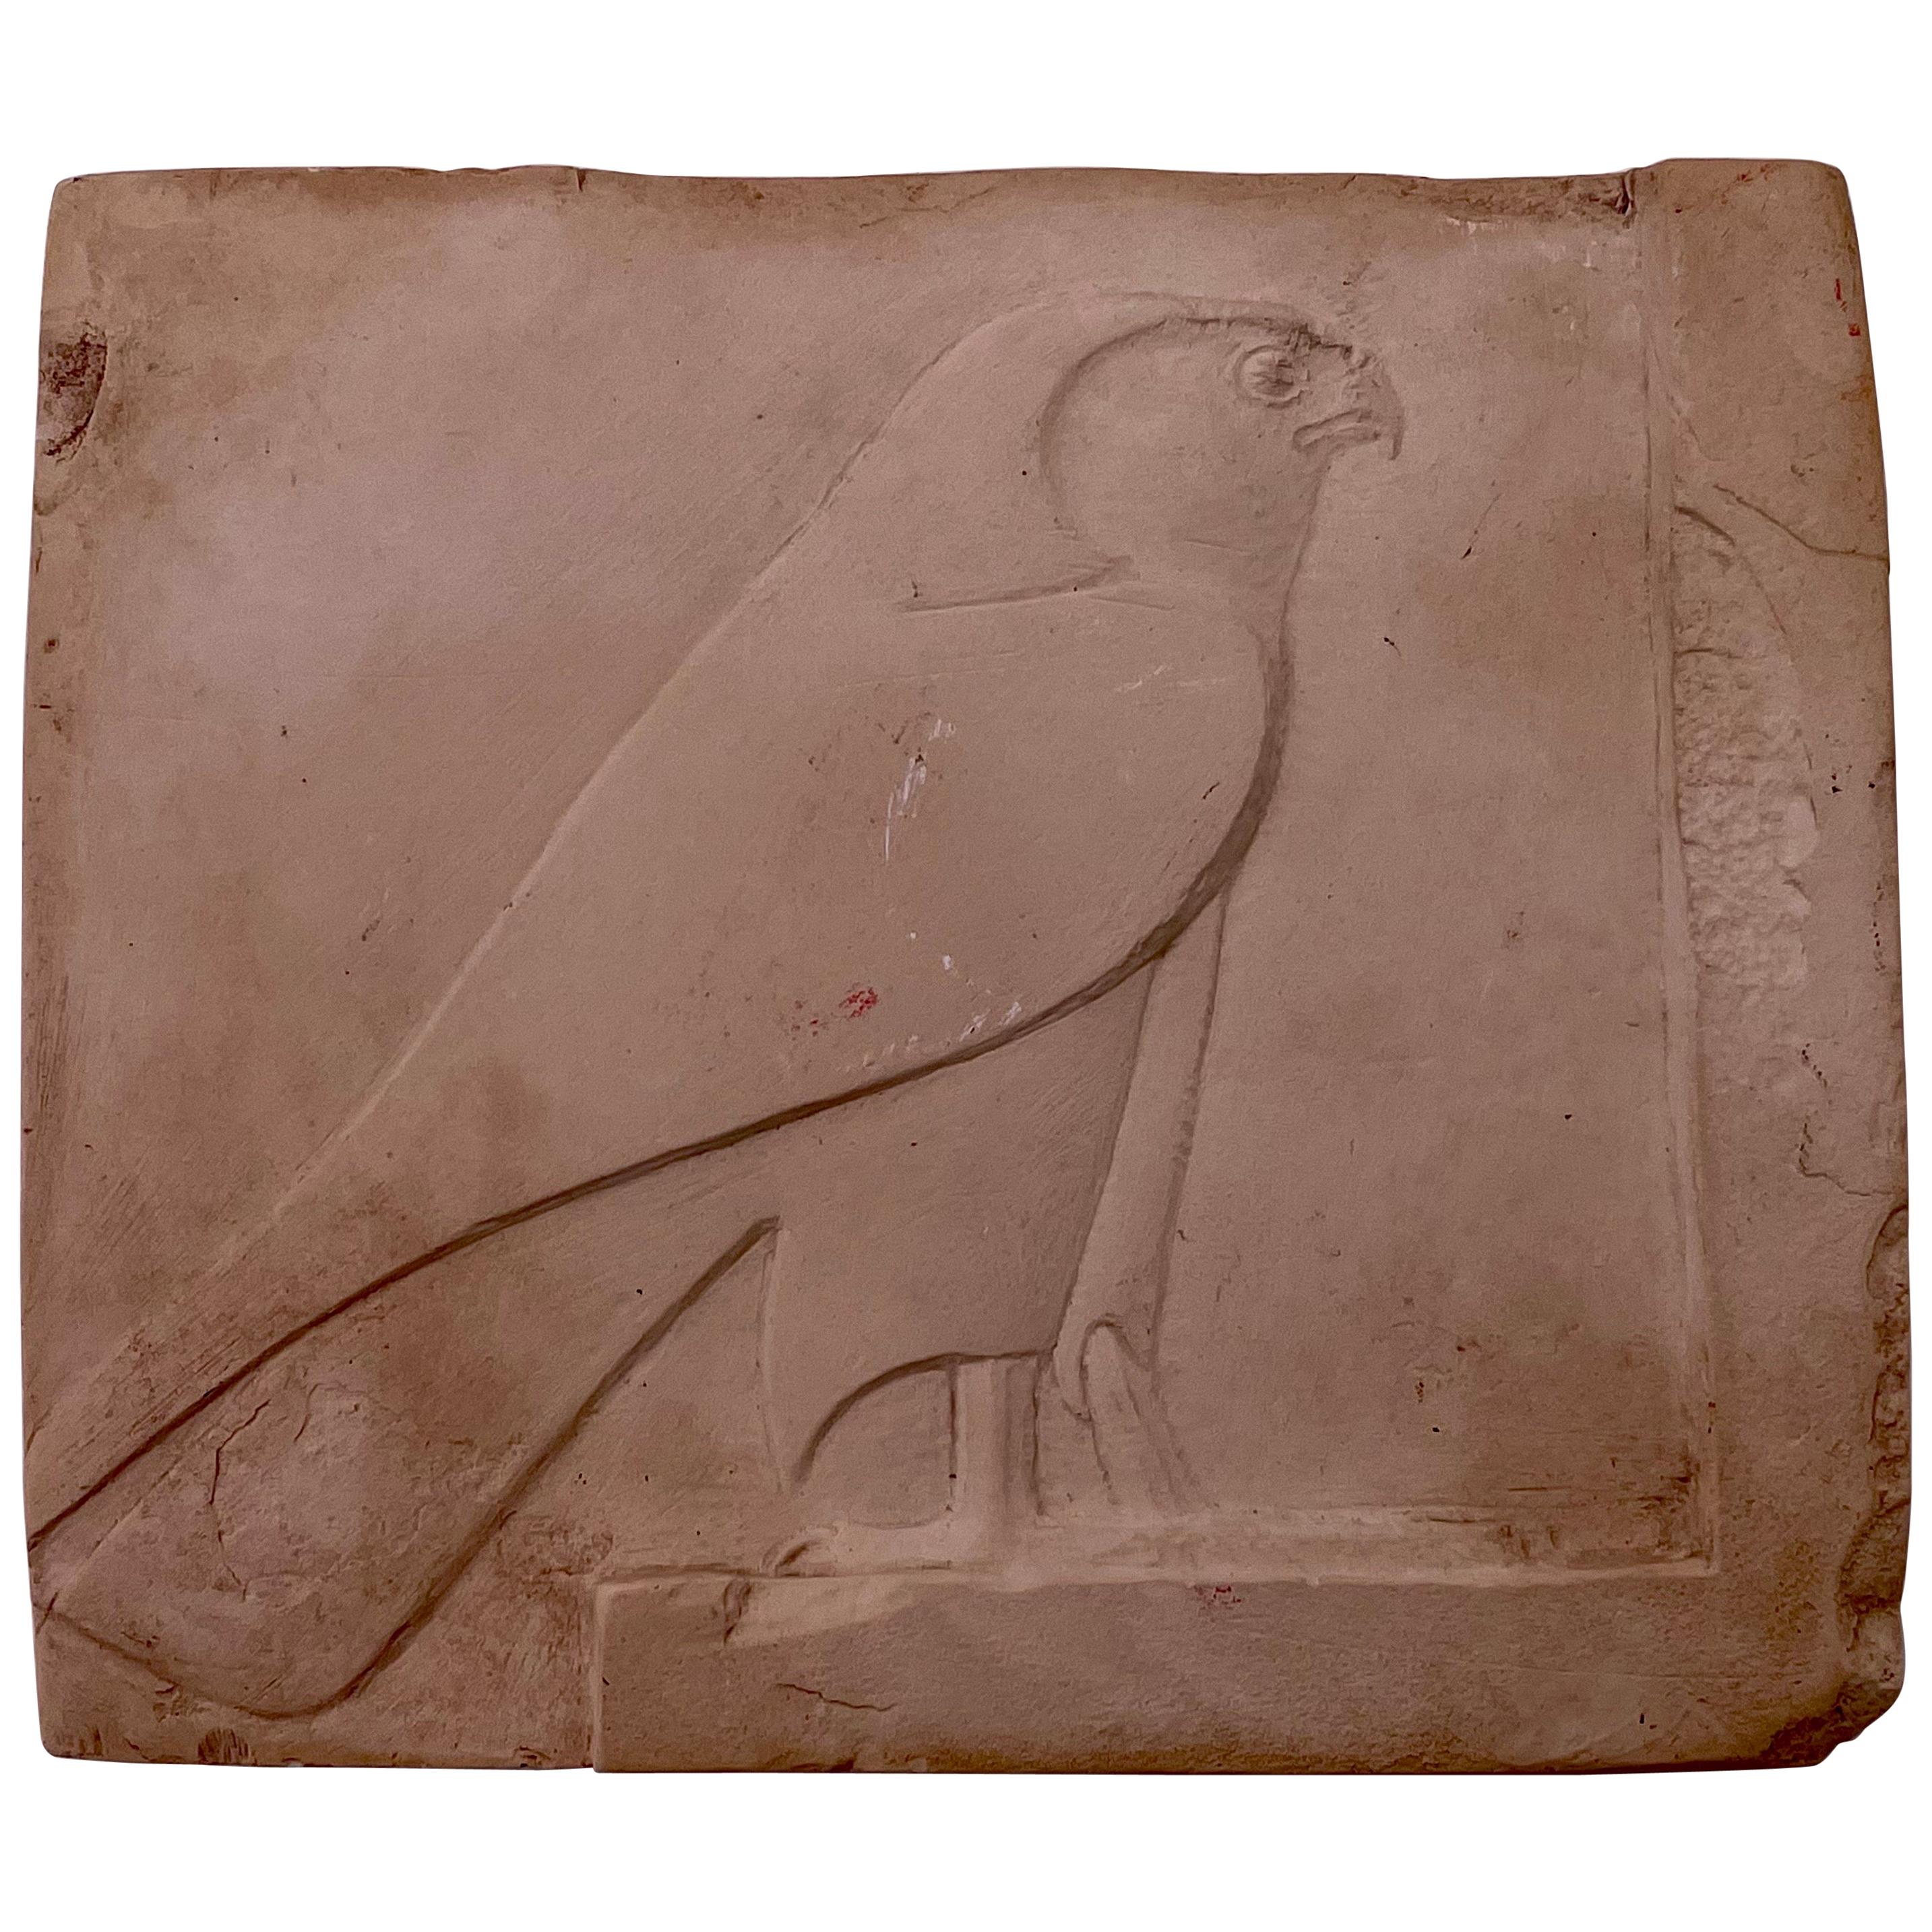 Horus Falcon Metropolitan Museum Art Casting Replica Egyptian Wall Tile